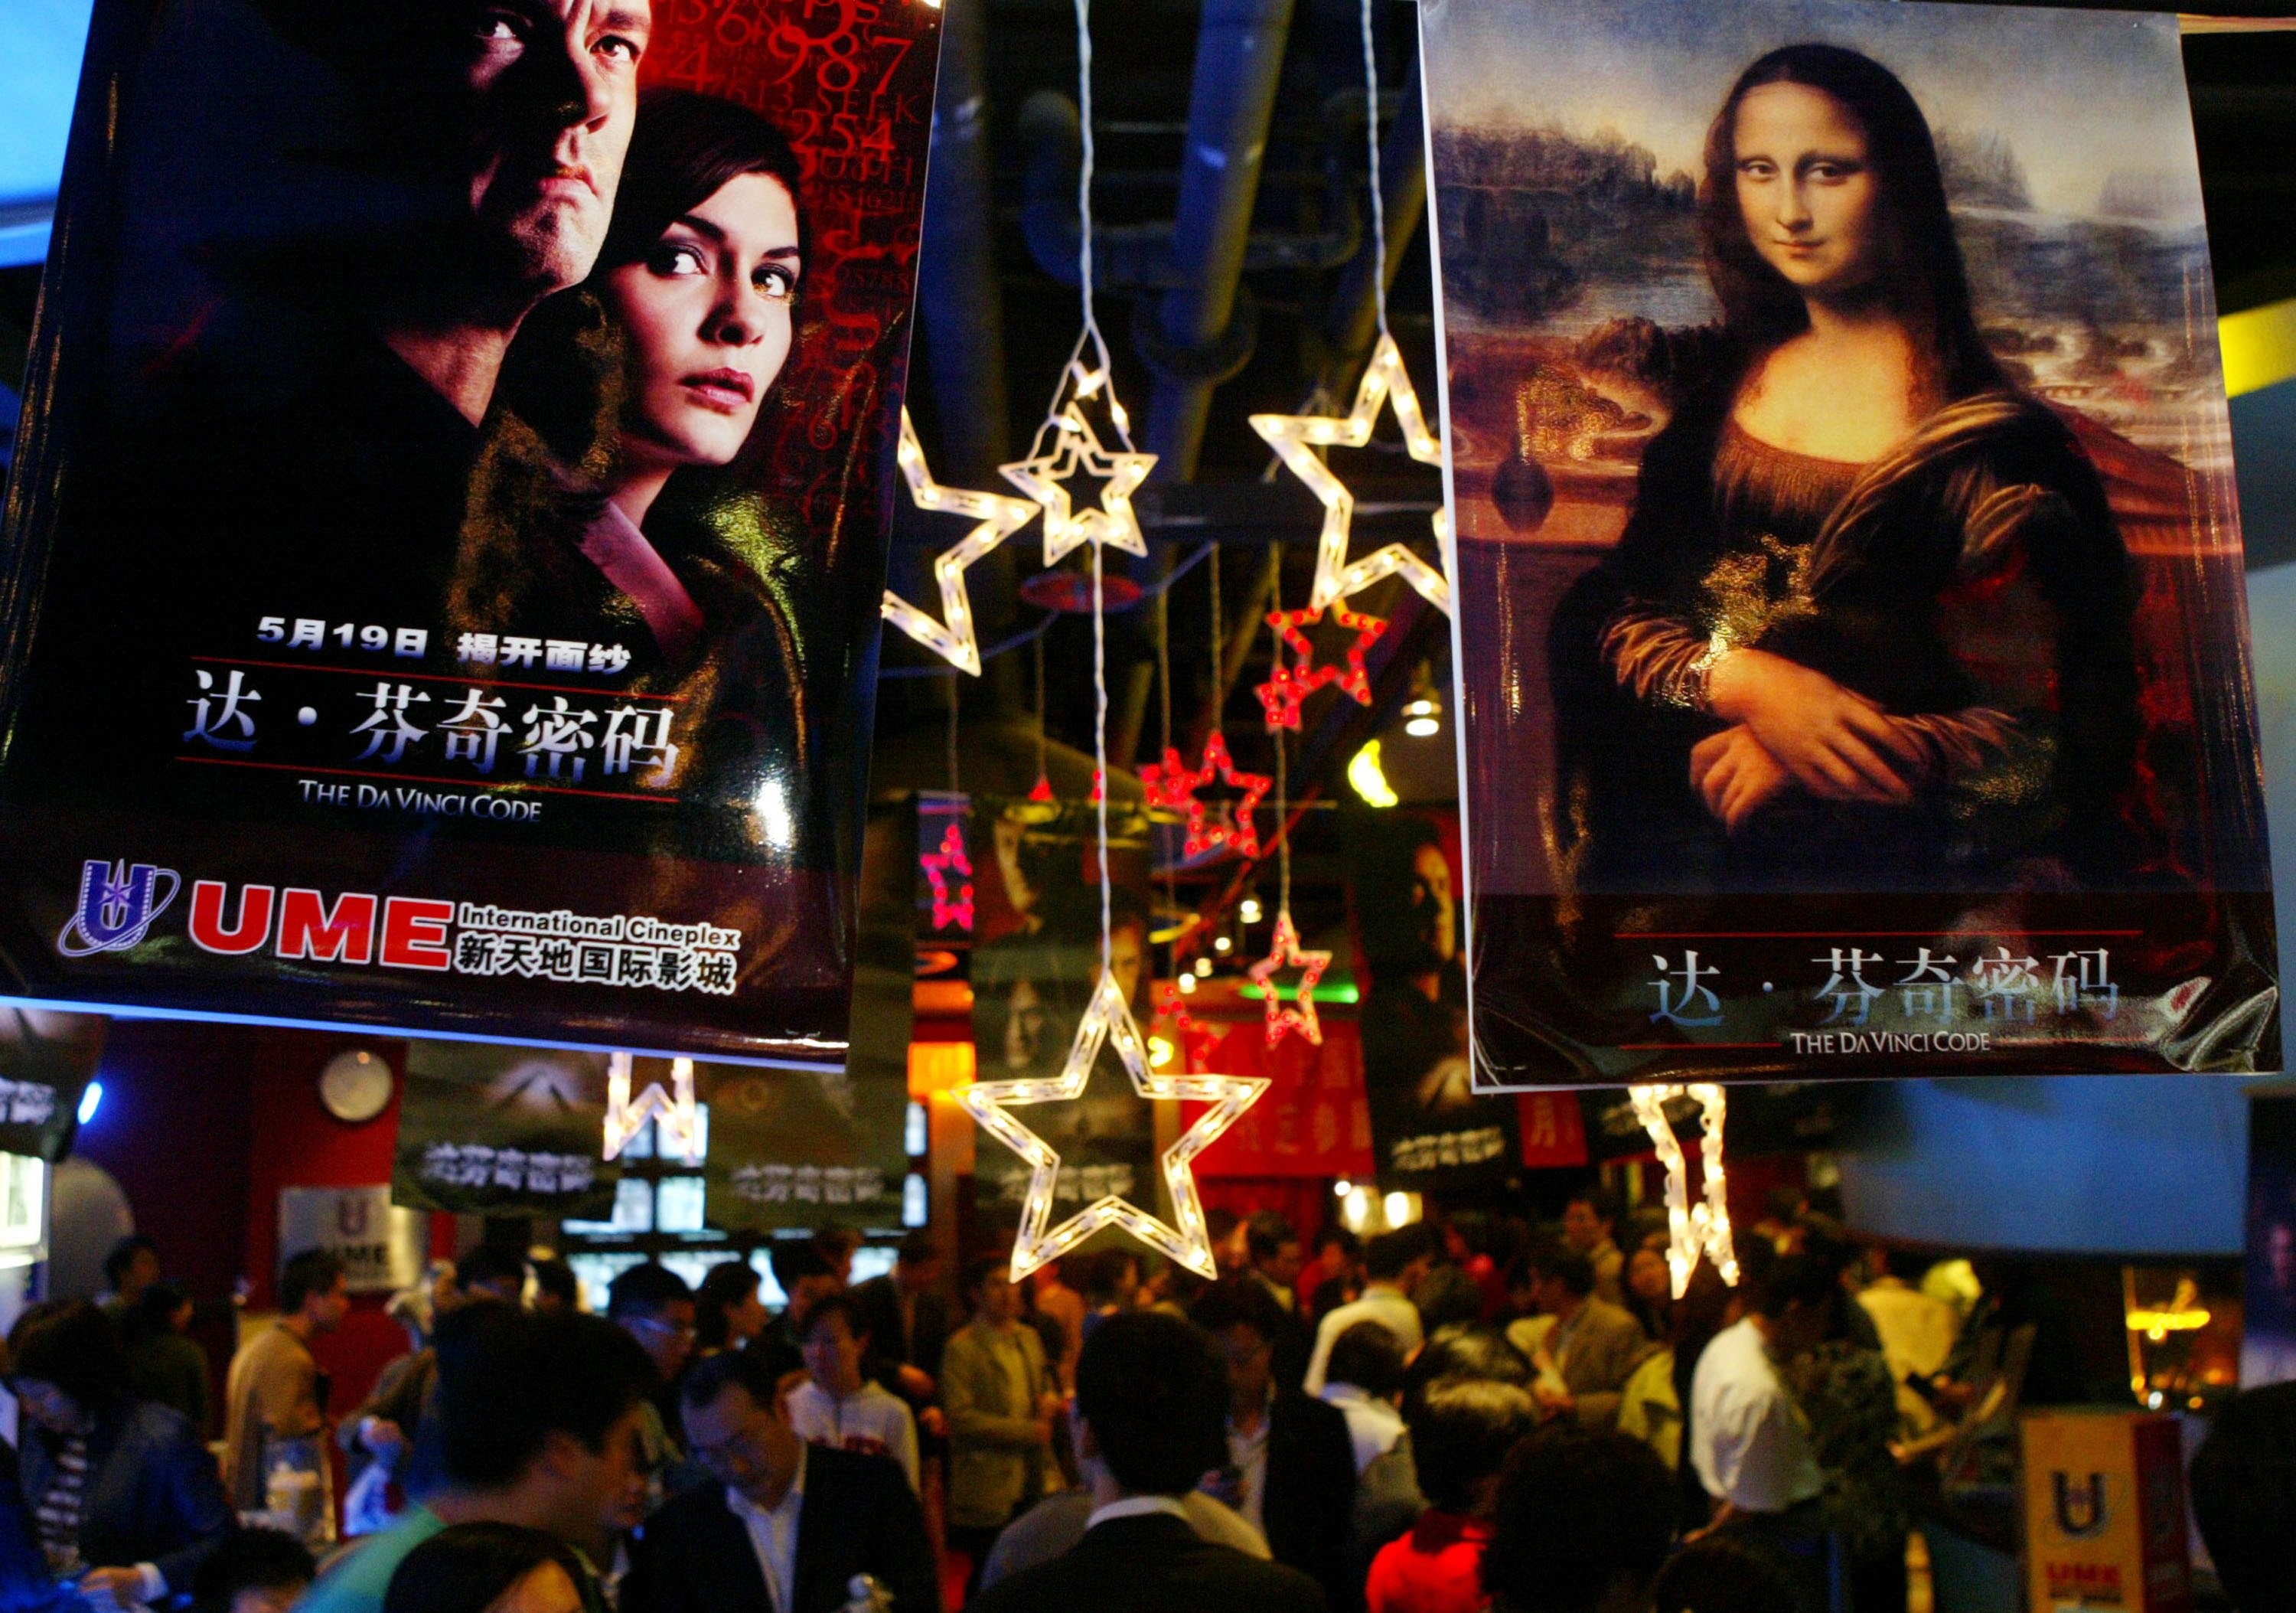 Números expressivos do mercado chinês atraem Hollywood (Foto: China Photos/Getty Images)